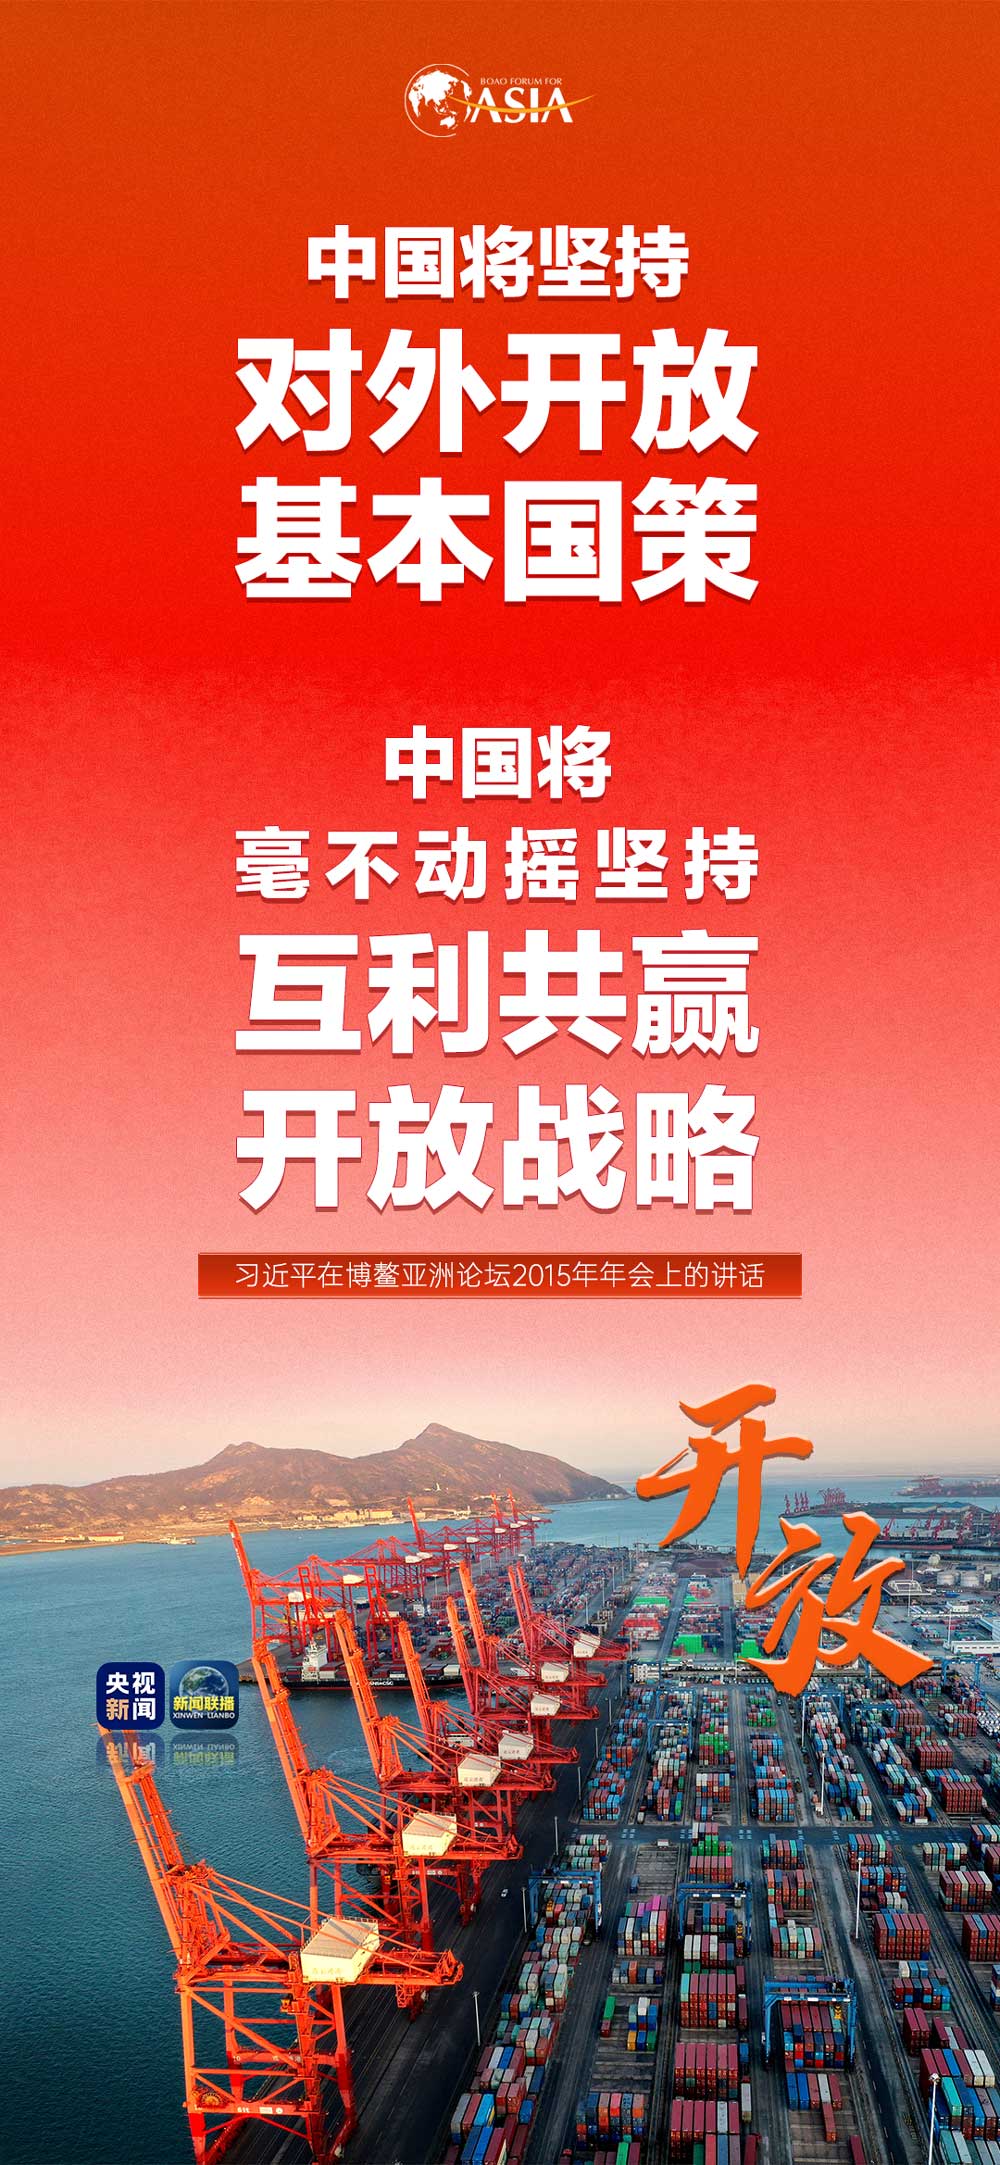 中国台湾下周一开战阿斯利康预苗 六成参加调研网民不肯打